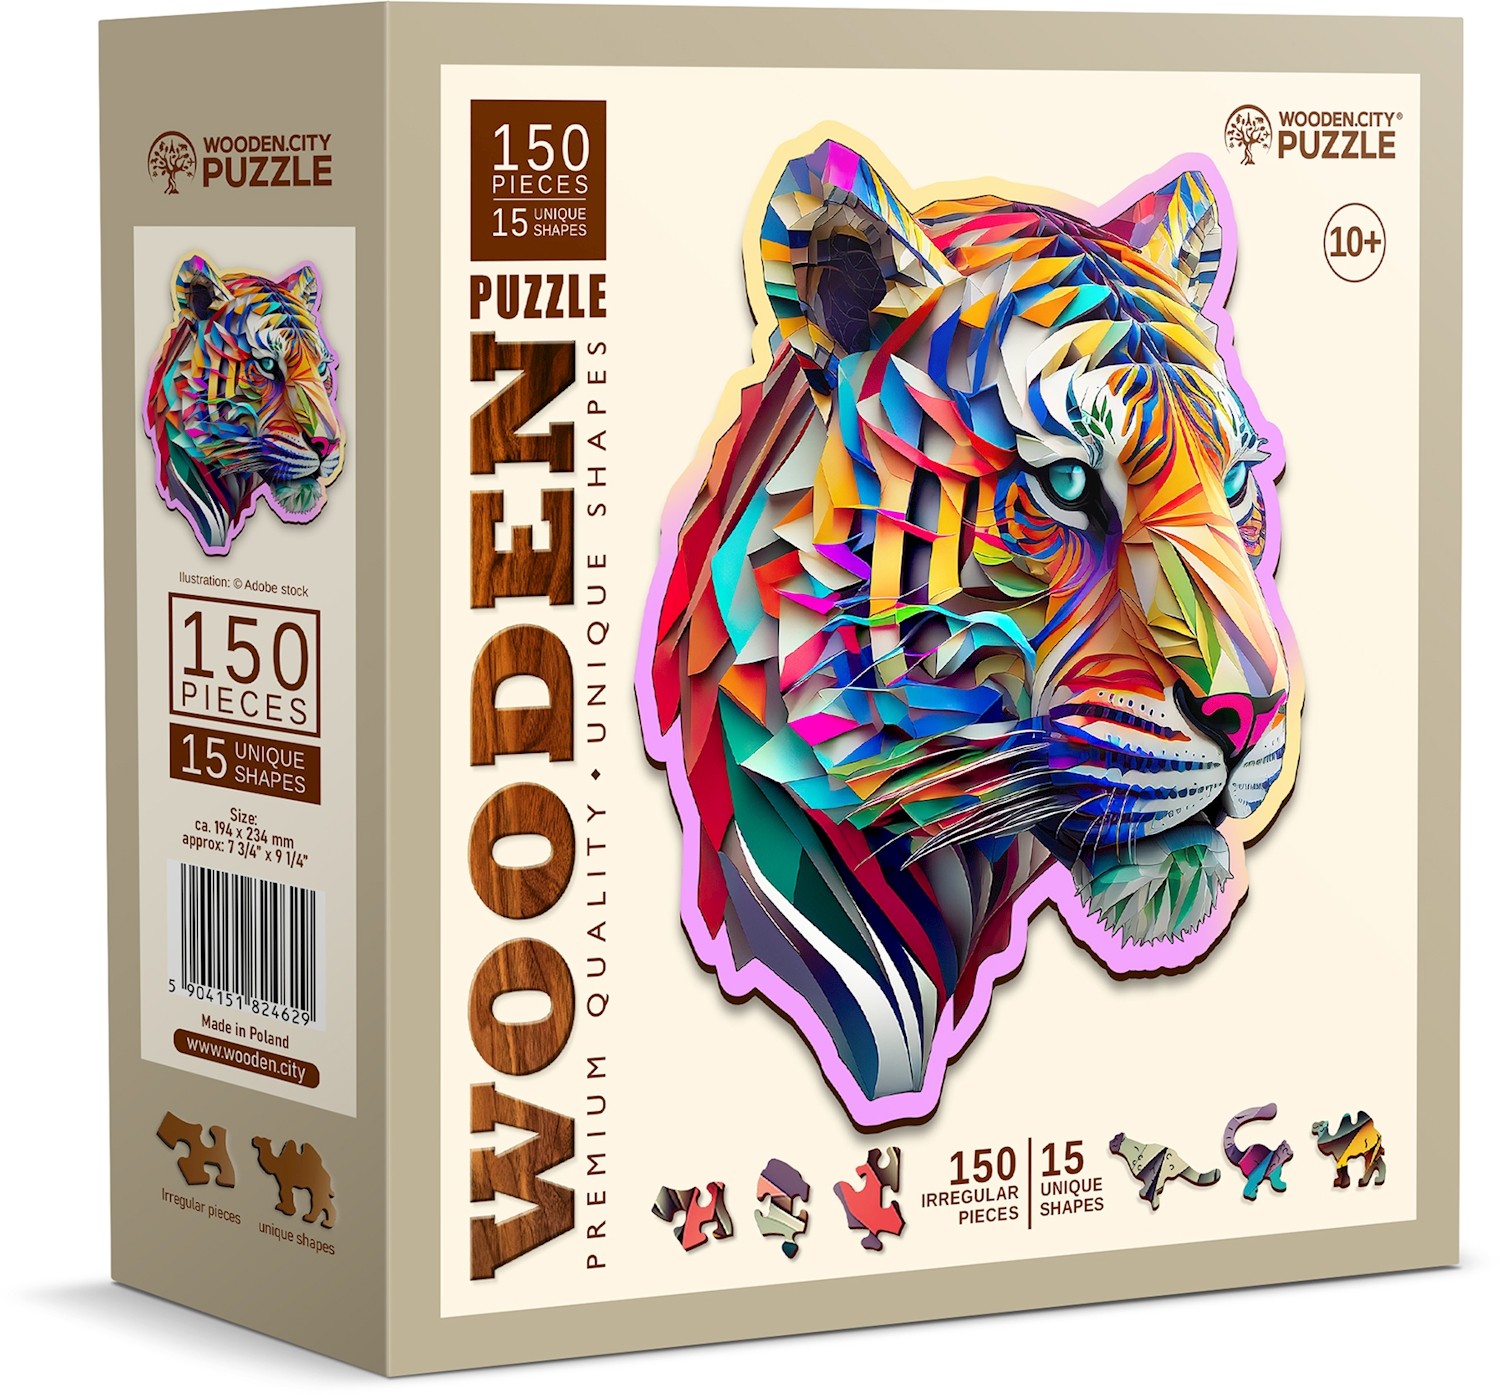 Puzzle 180 pièces : Rainbow Wooden Puzzle LOUP - Jeux et jouets Gigamic -  Avenue des Jeux